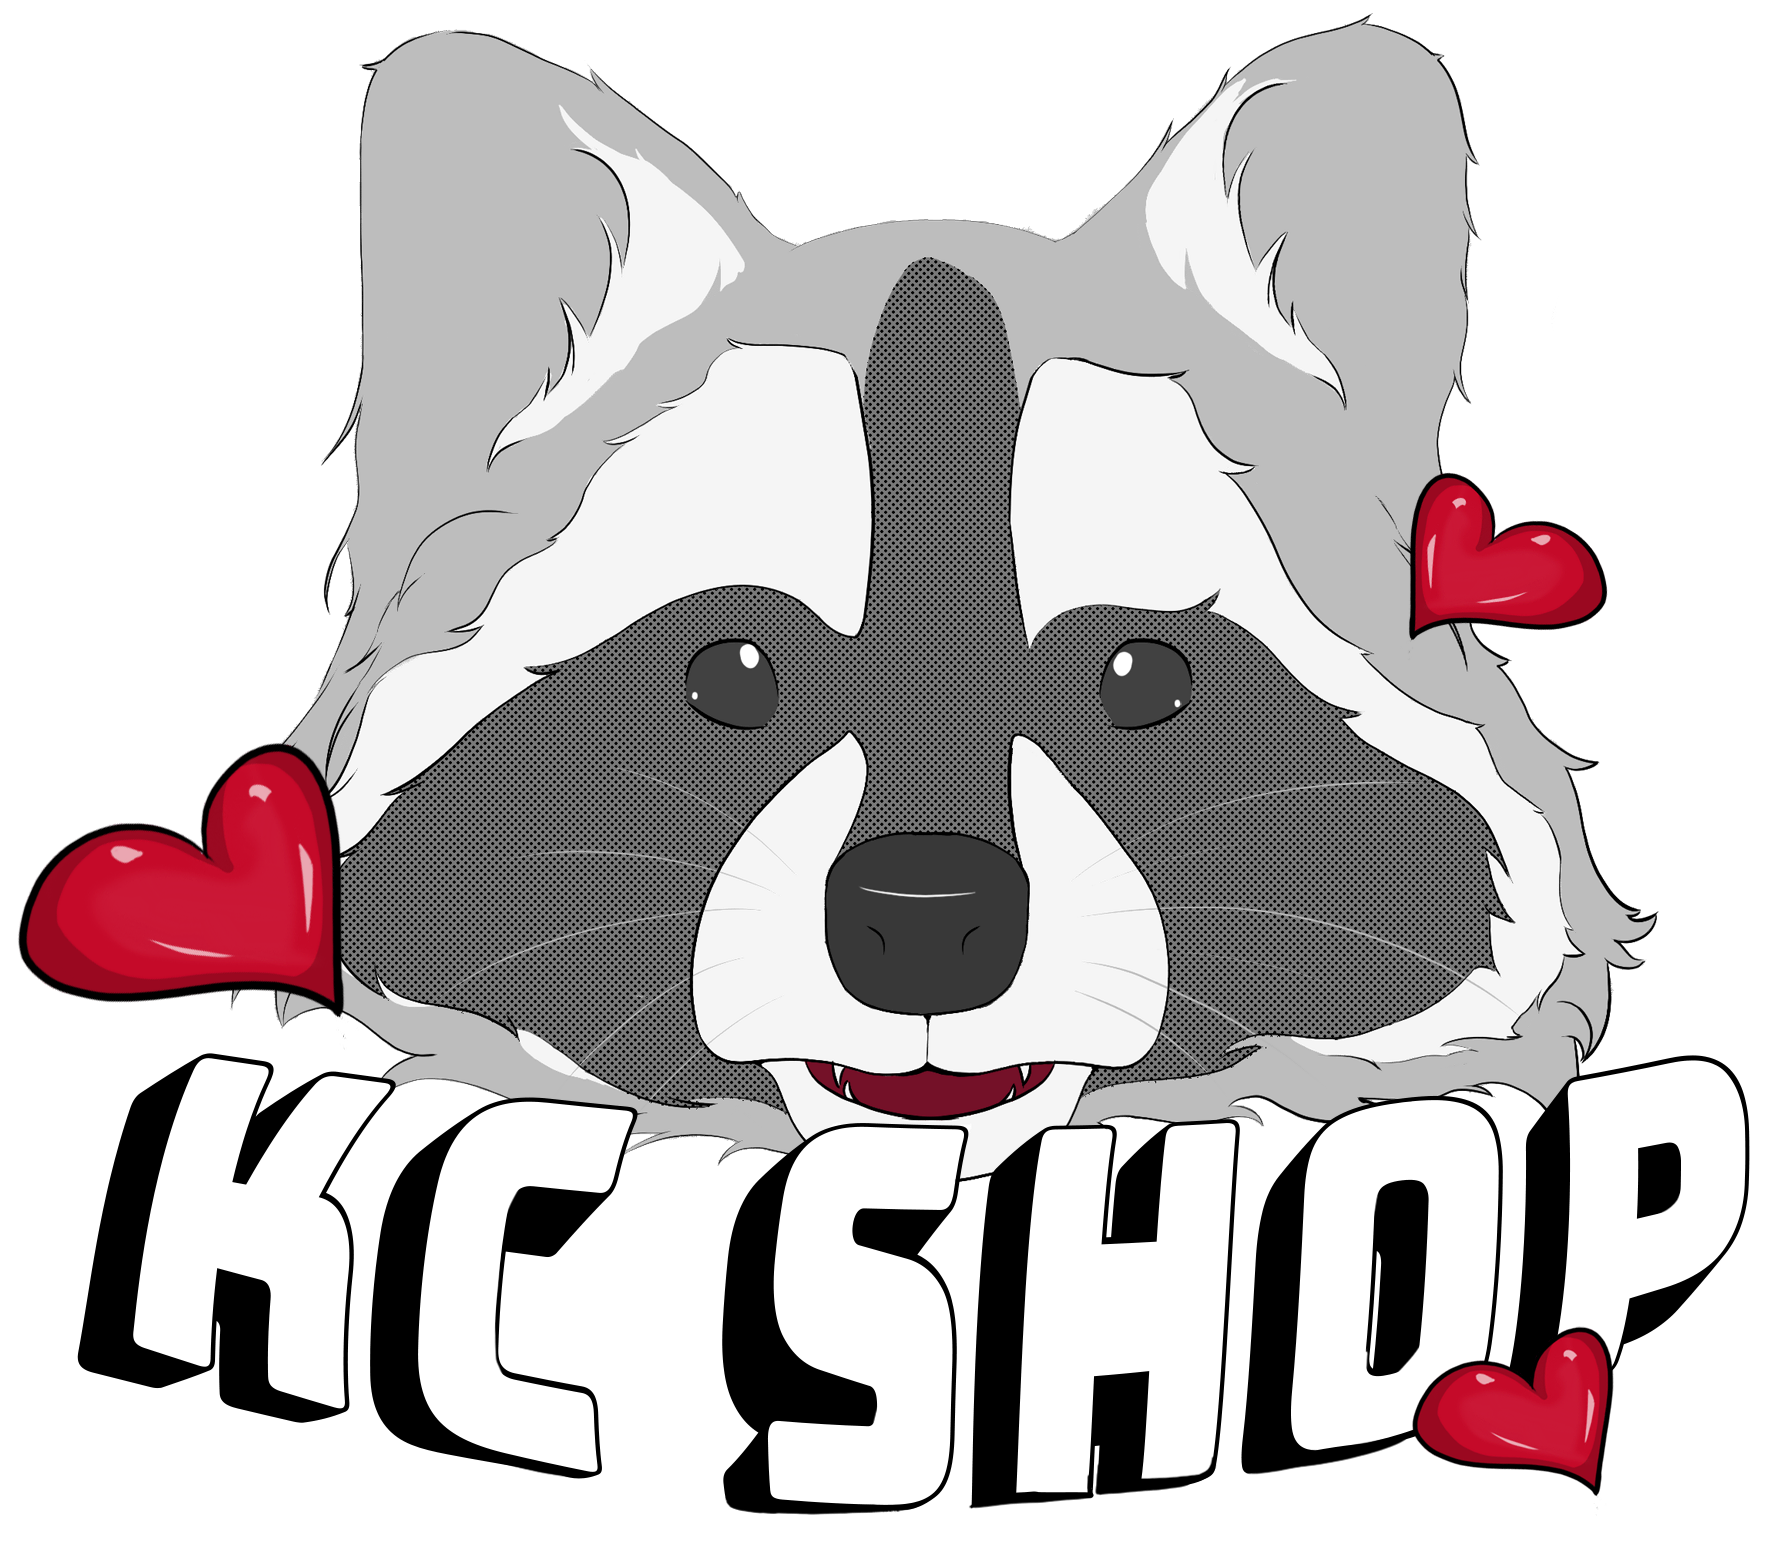 KC Shop